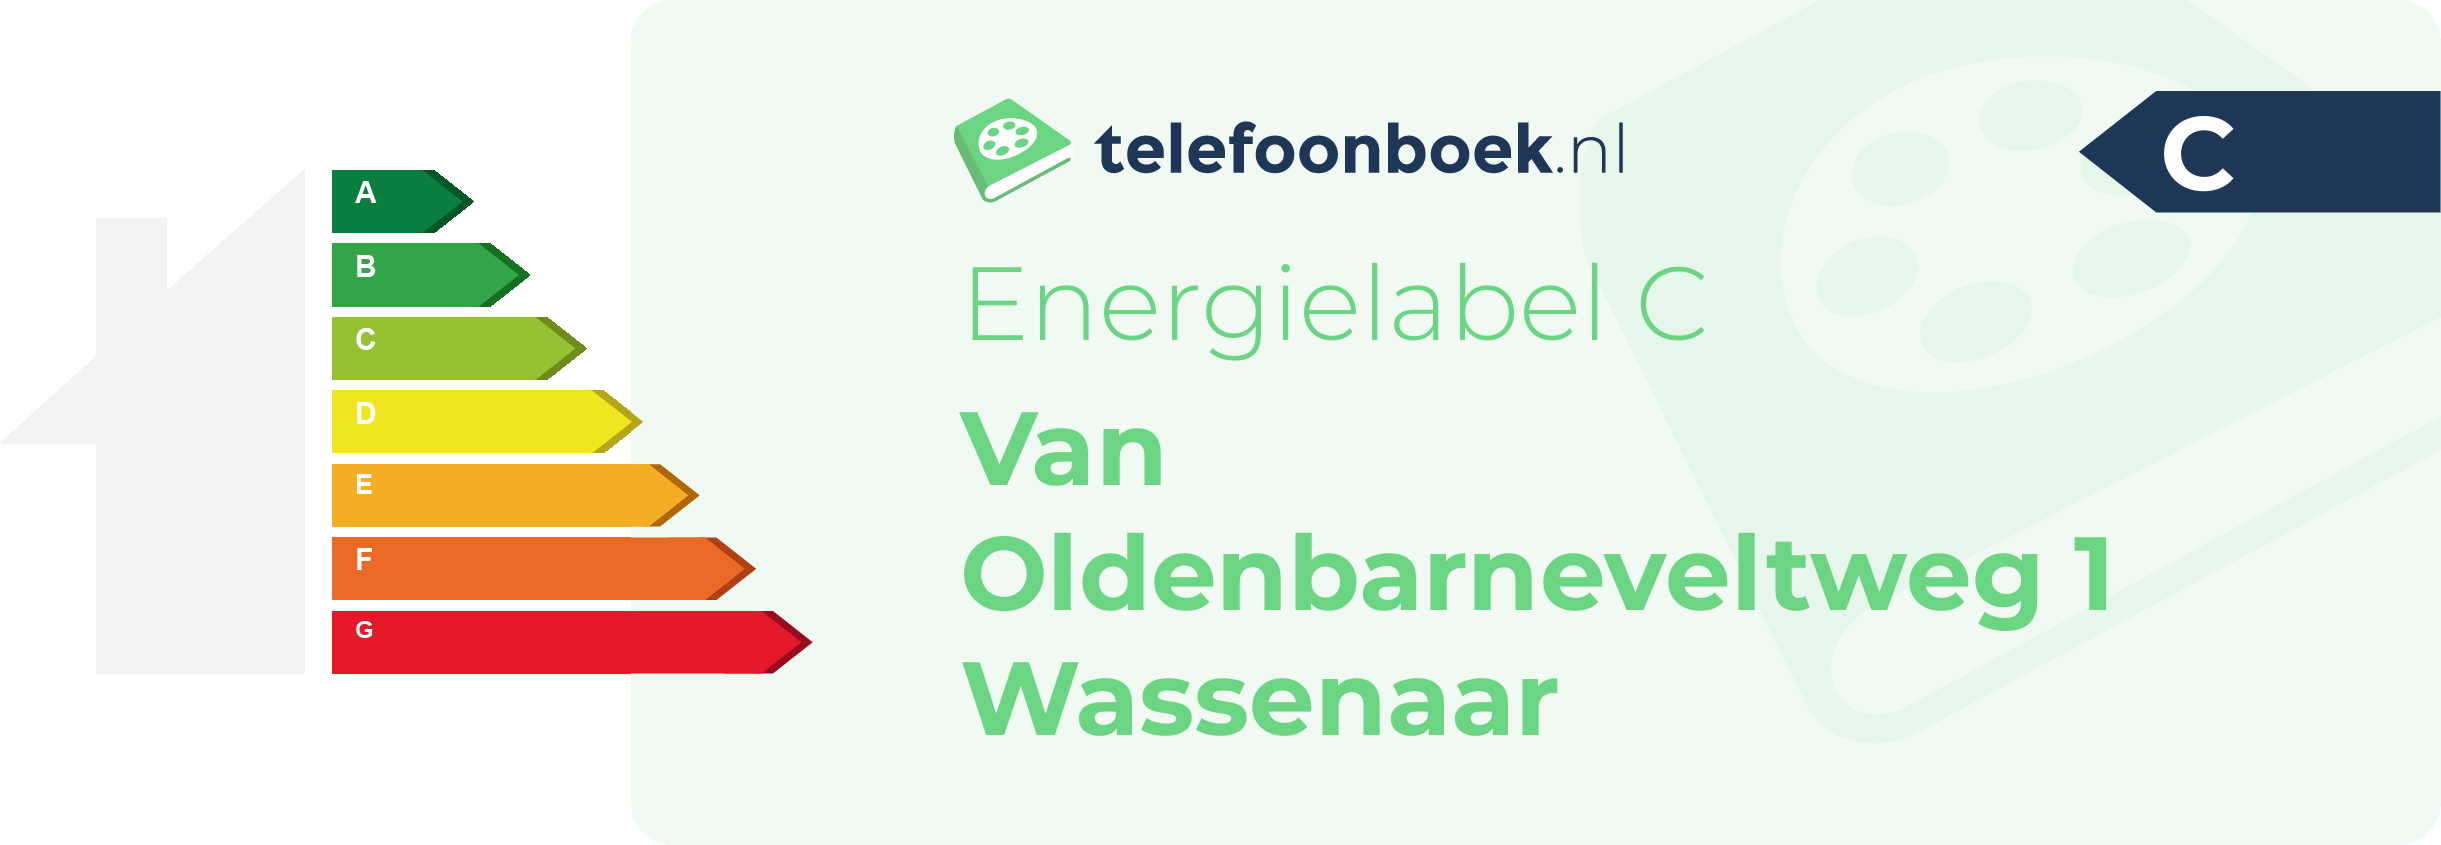 Energielabel Van Oldenbarneveltweg 1 Wassenaar